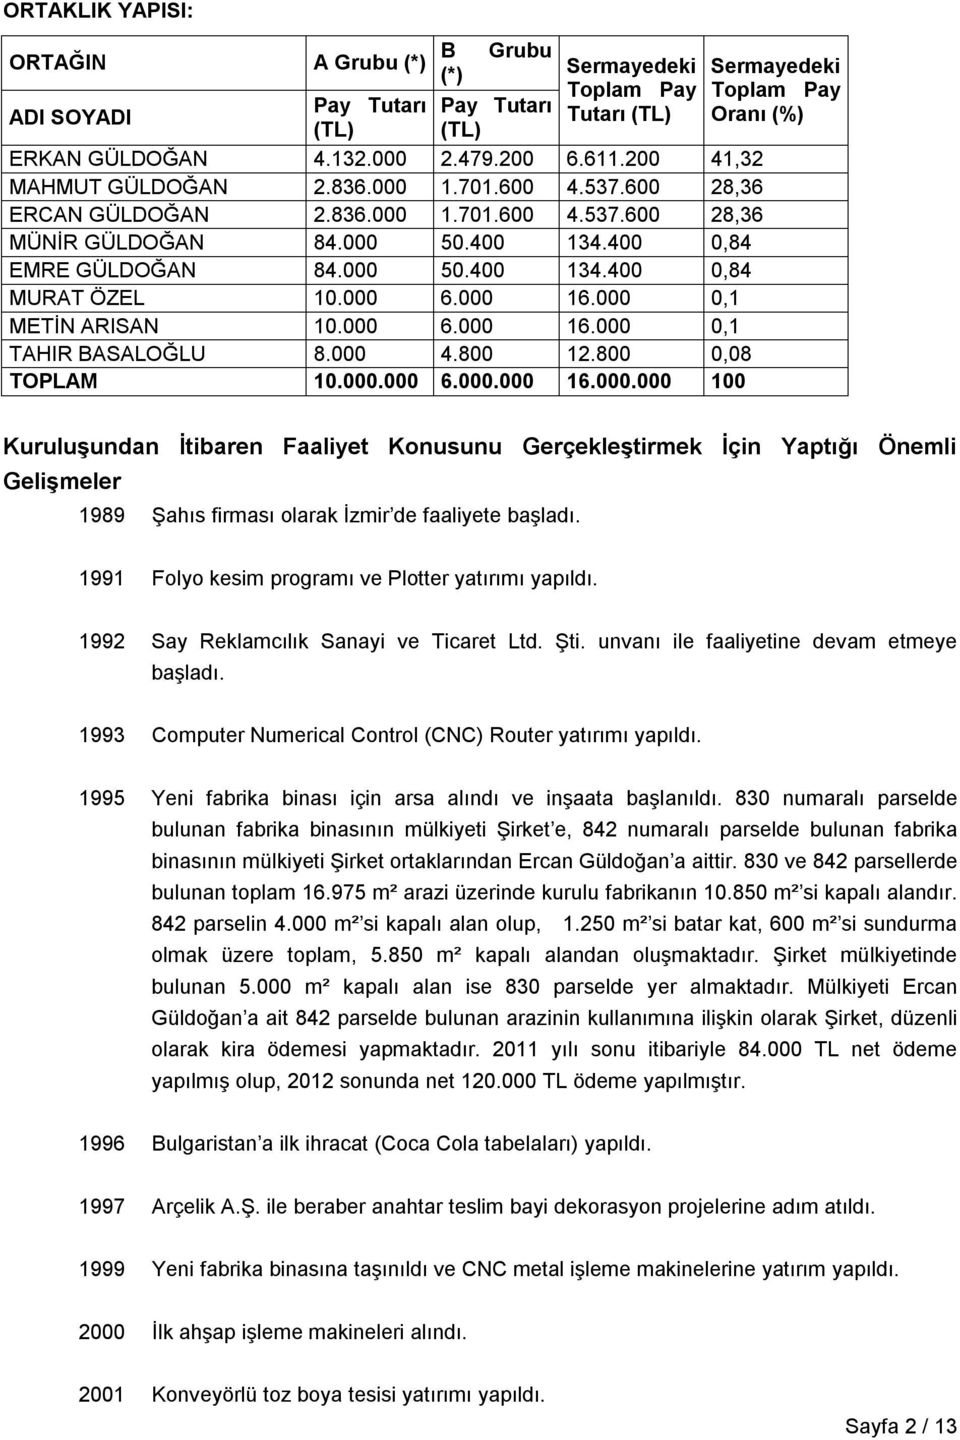 000 0,1 METİN ARISAN 10.000 6.000 16.000 0,1 TAHIR BASALOĞLU 8.000 4.800 12.800 0,08 TOPLAM 10.000.000 6.000.000 16.000.000 100 Sermayedeki Toplam Pay Oranı (%) Kuruluşundan İtibaren Faaliyet Konusunu Gerçekleştirmek İçin Yaptığı Önemli Gelişmeler 1989 Şahıs firması olarak İzmir de faaliyete başladı.